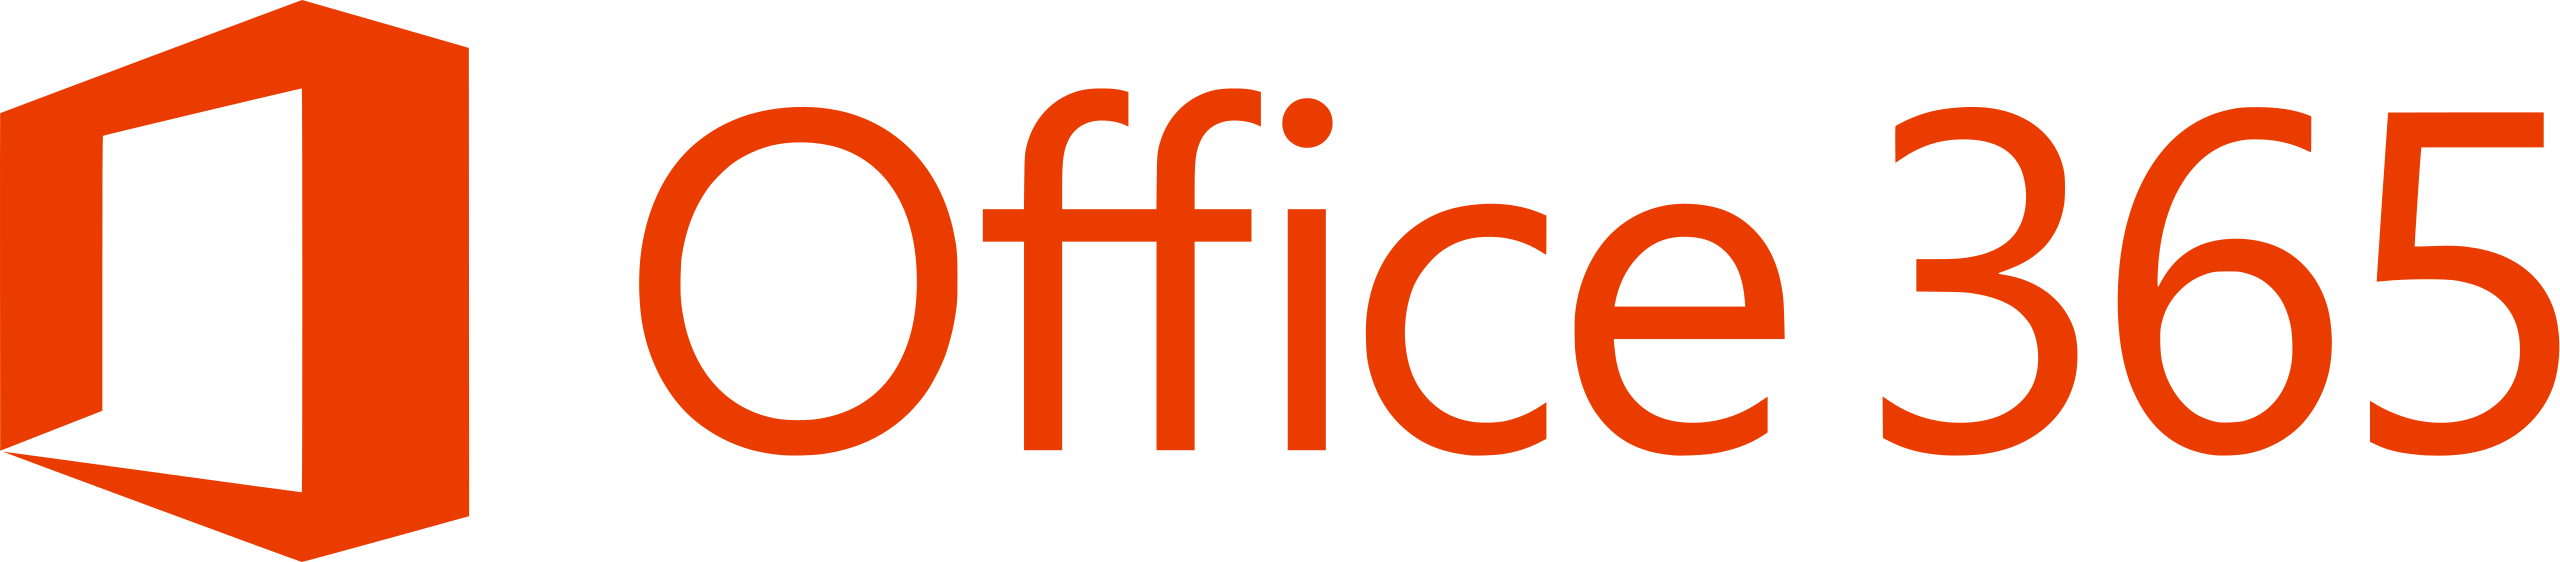 logo suite office 365 - outils Gématique